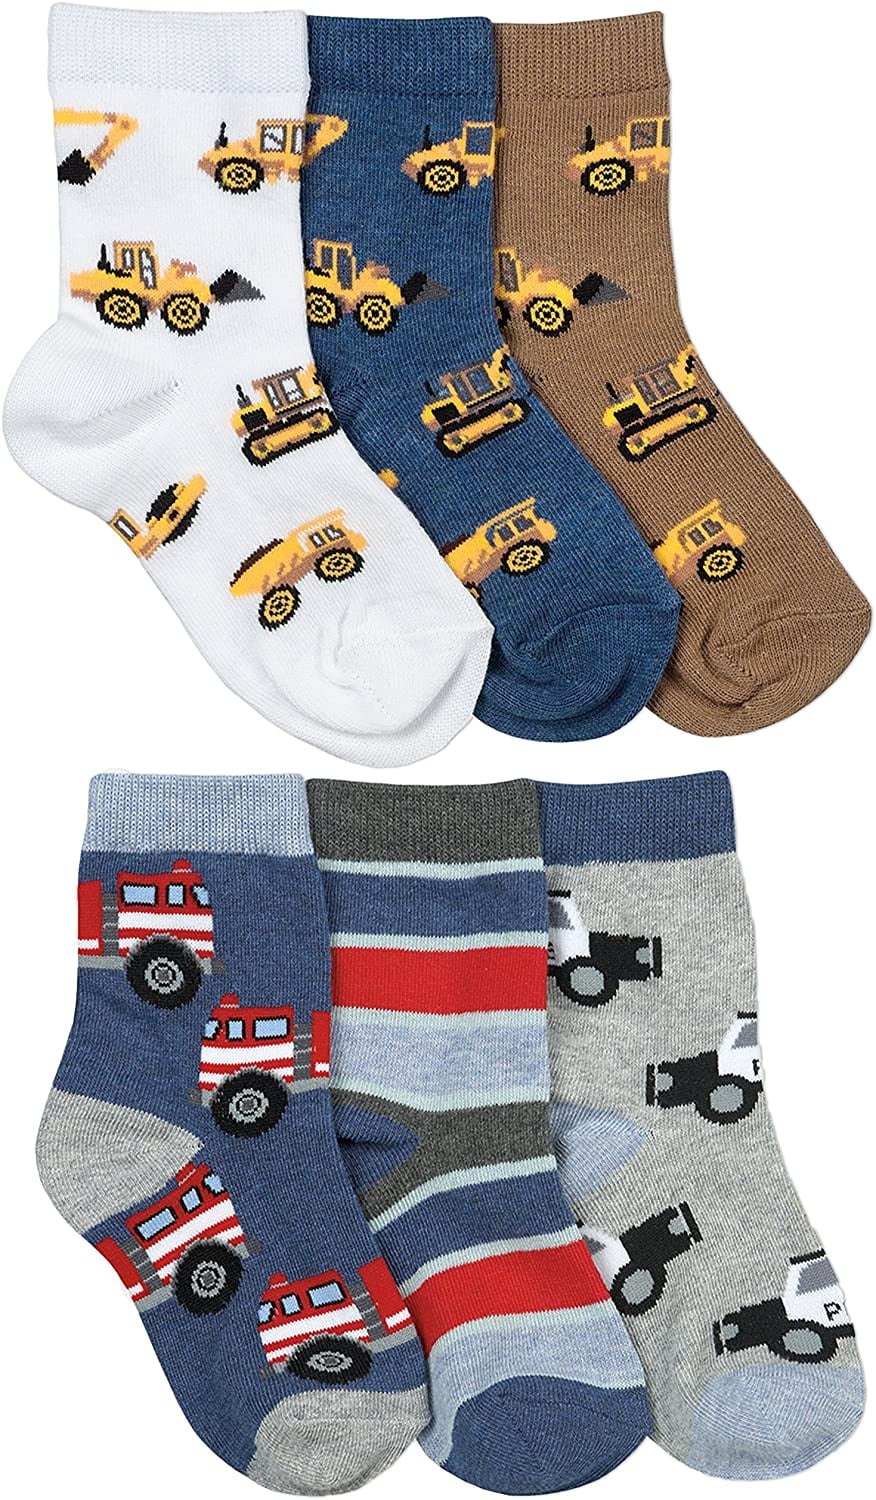 Little boys Knee High Socks Cotton Cars Comfort Socks 8 Pair Pack